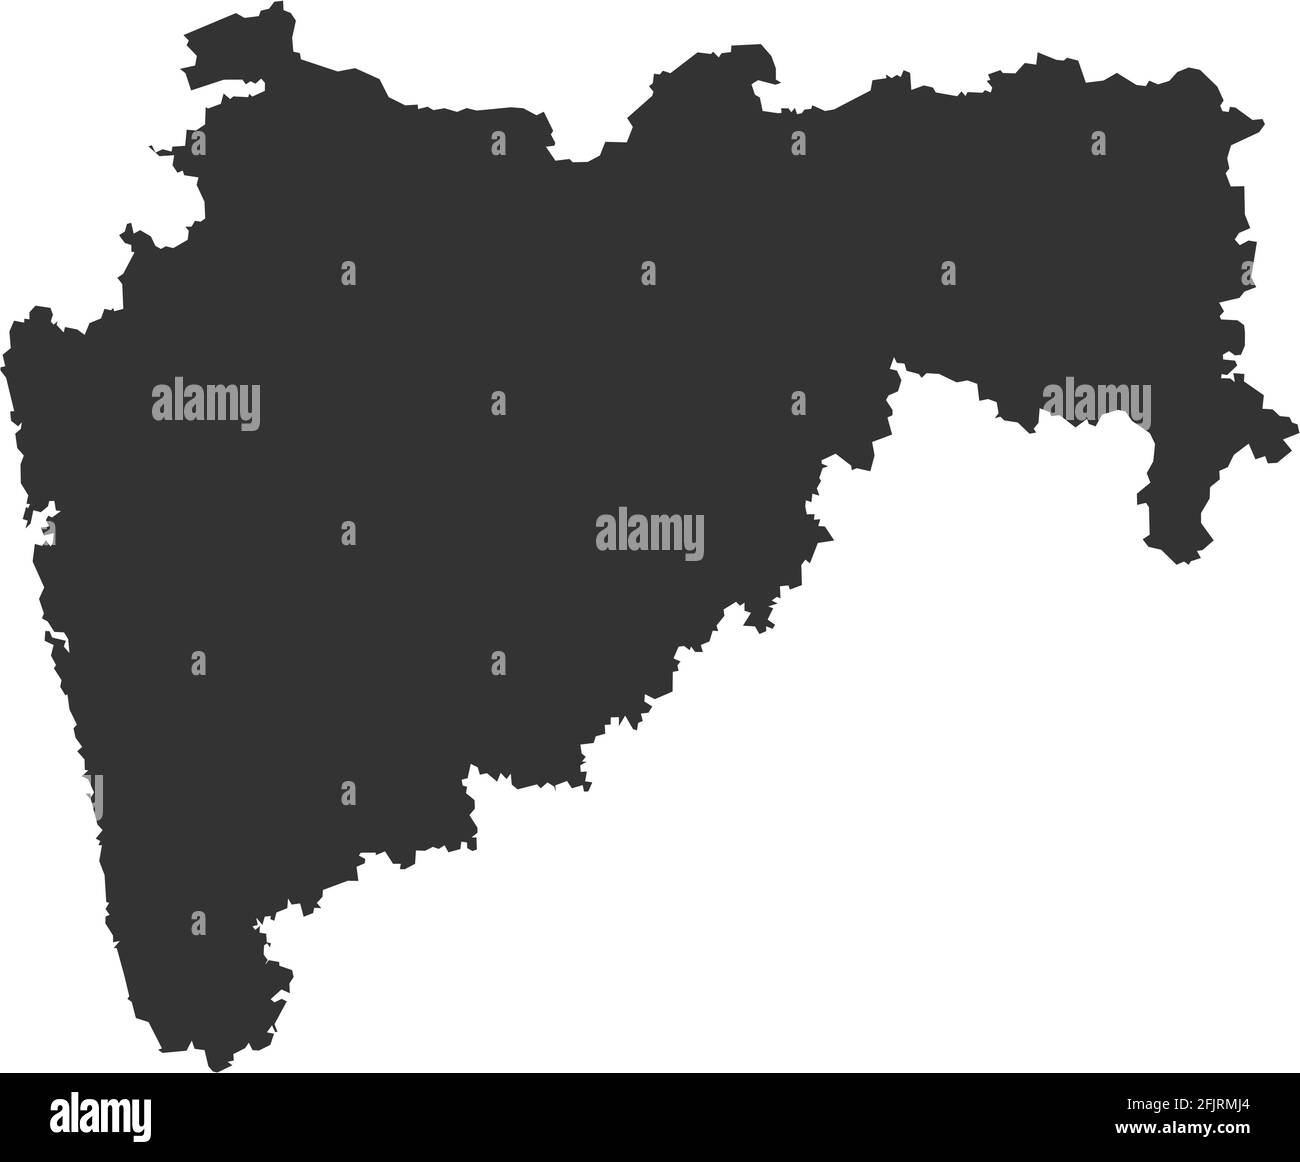 Mappa dello stato indiano di Maharashtra. Sfondo grigio scuro. Progettazione grafica dei concetti aziendali. Illustrazione Vettoriale